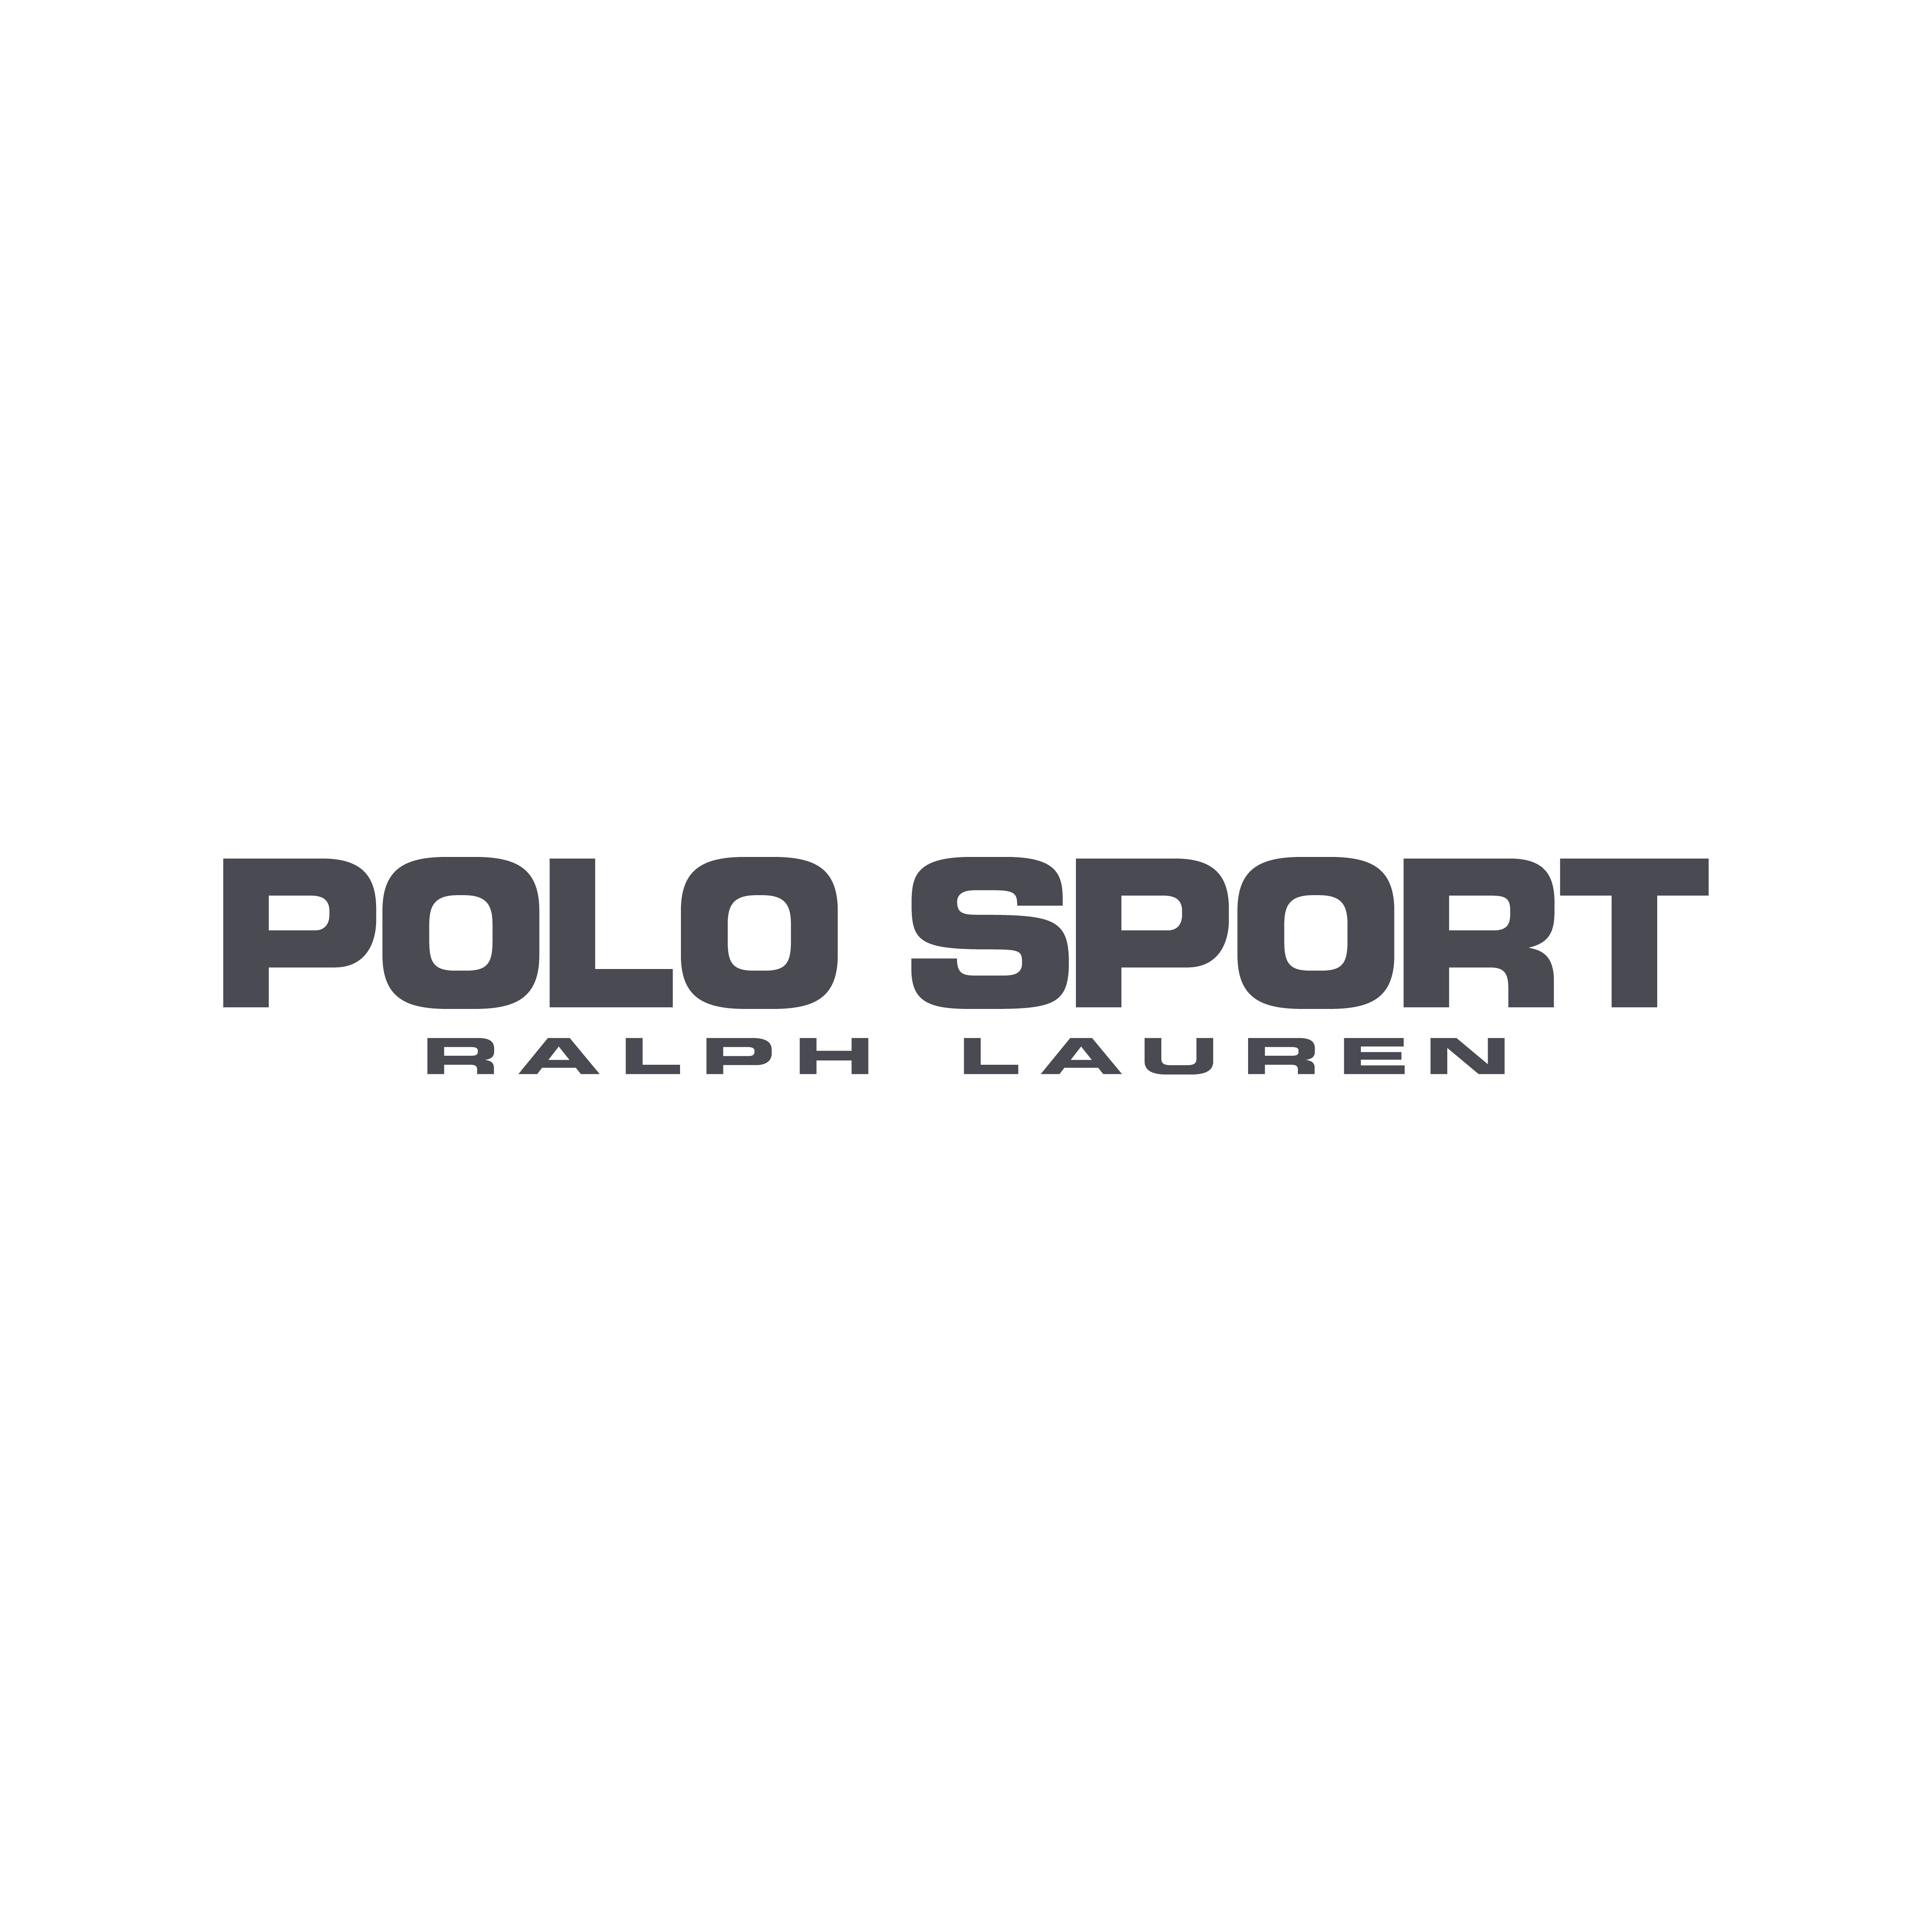 Polo Sport Ralph Lauren